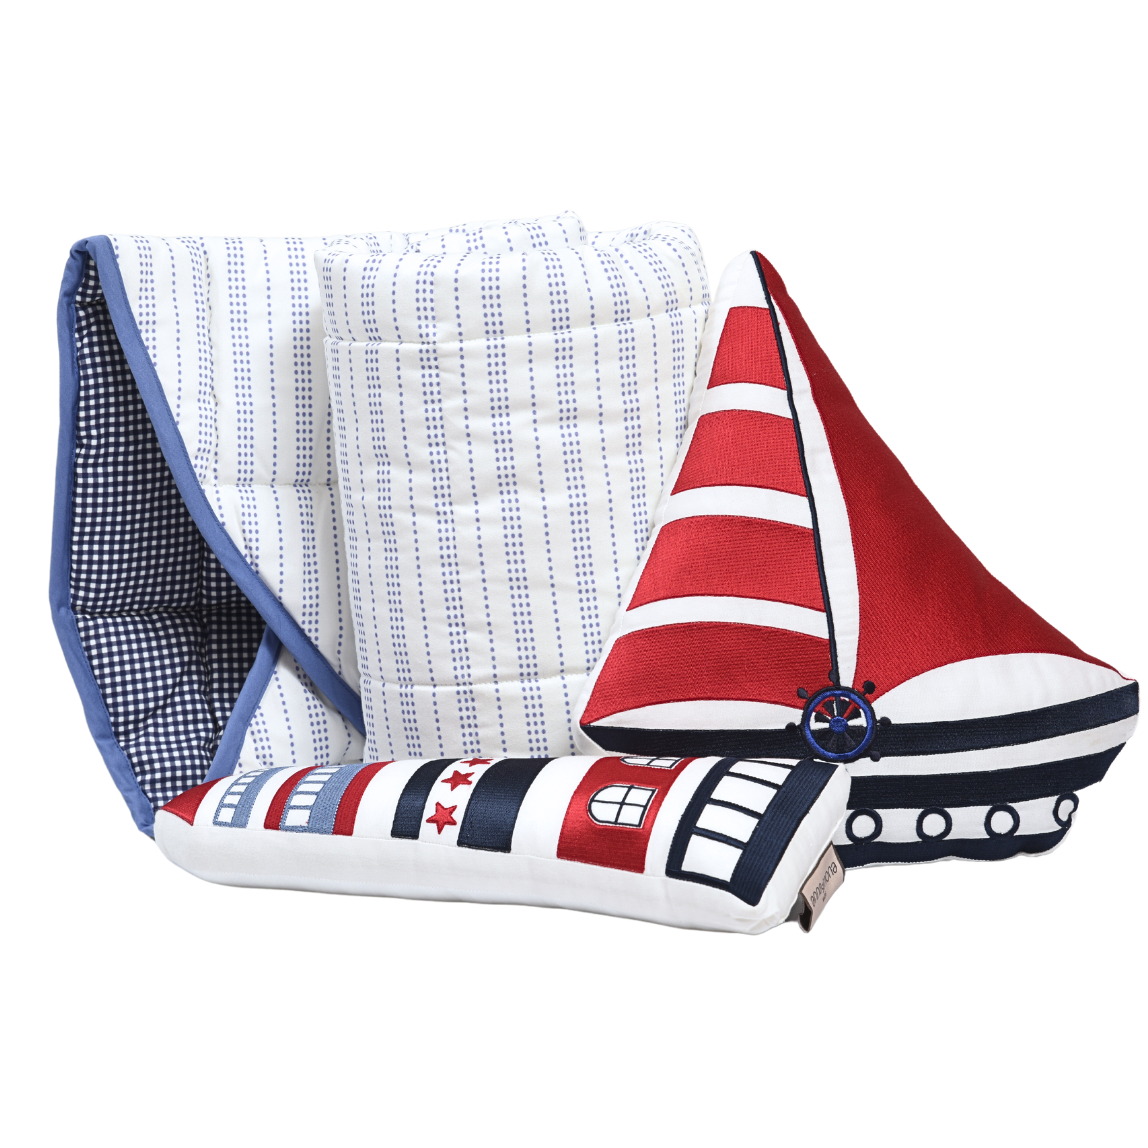 Sail Boat Play Time Gift Set (Play Mat + Play Cushions)